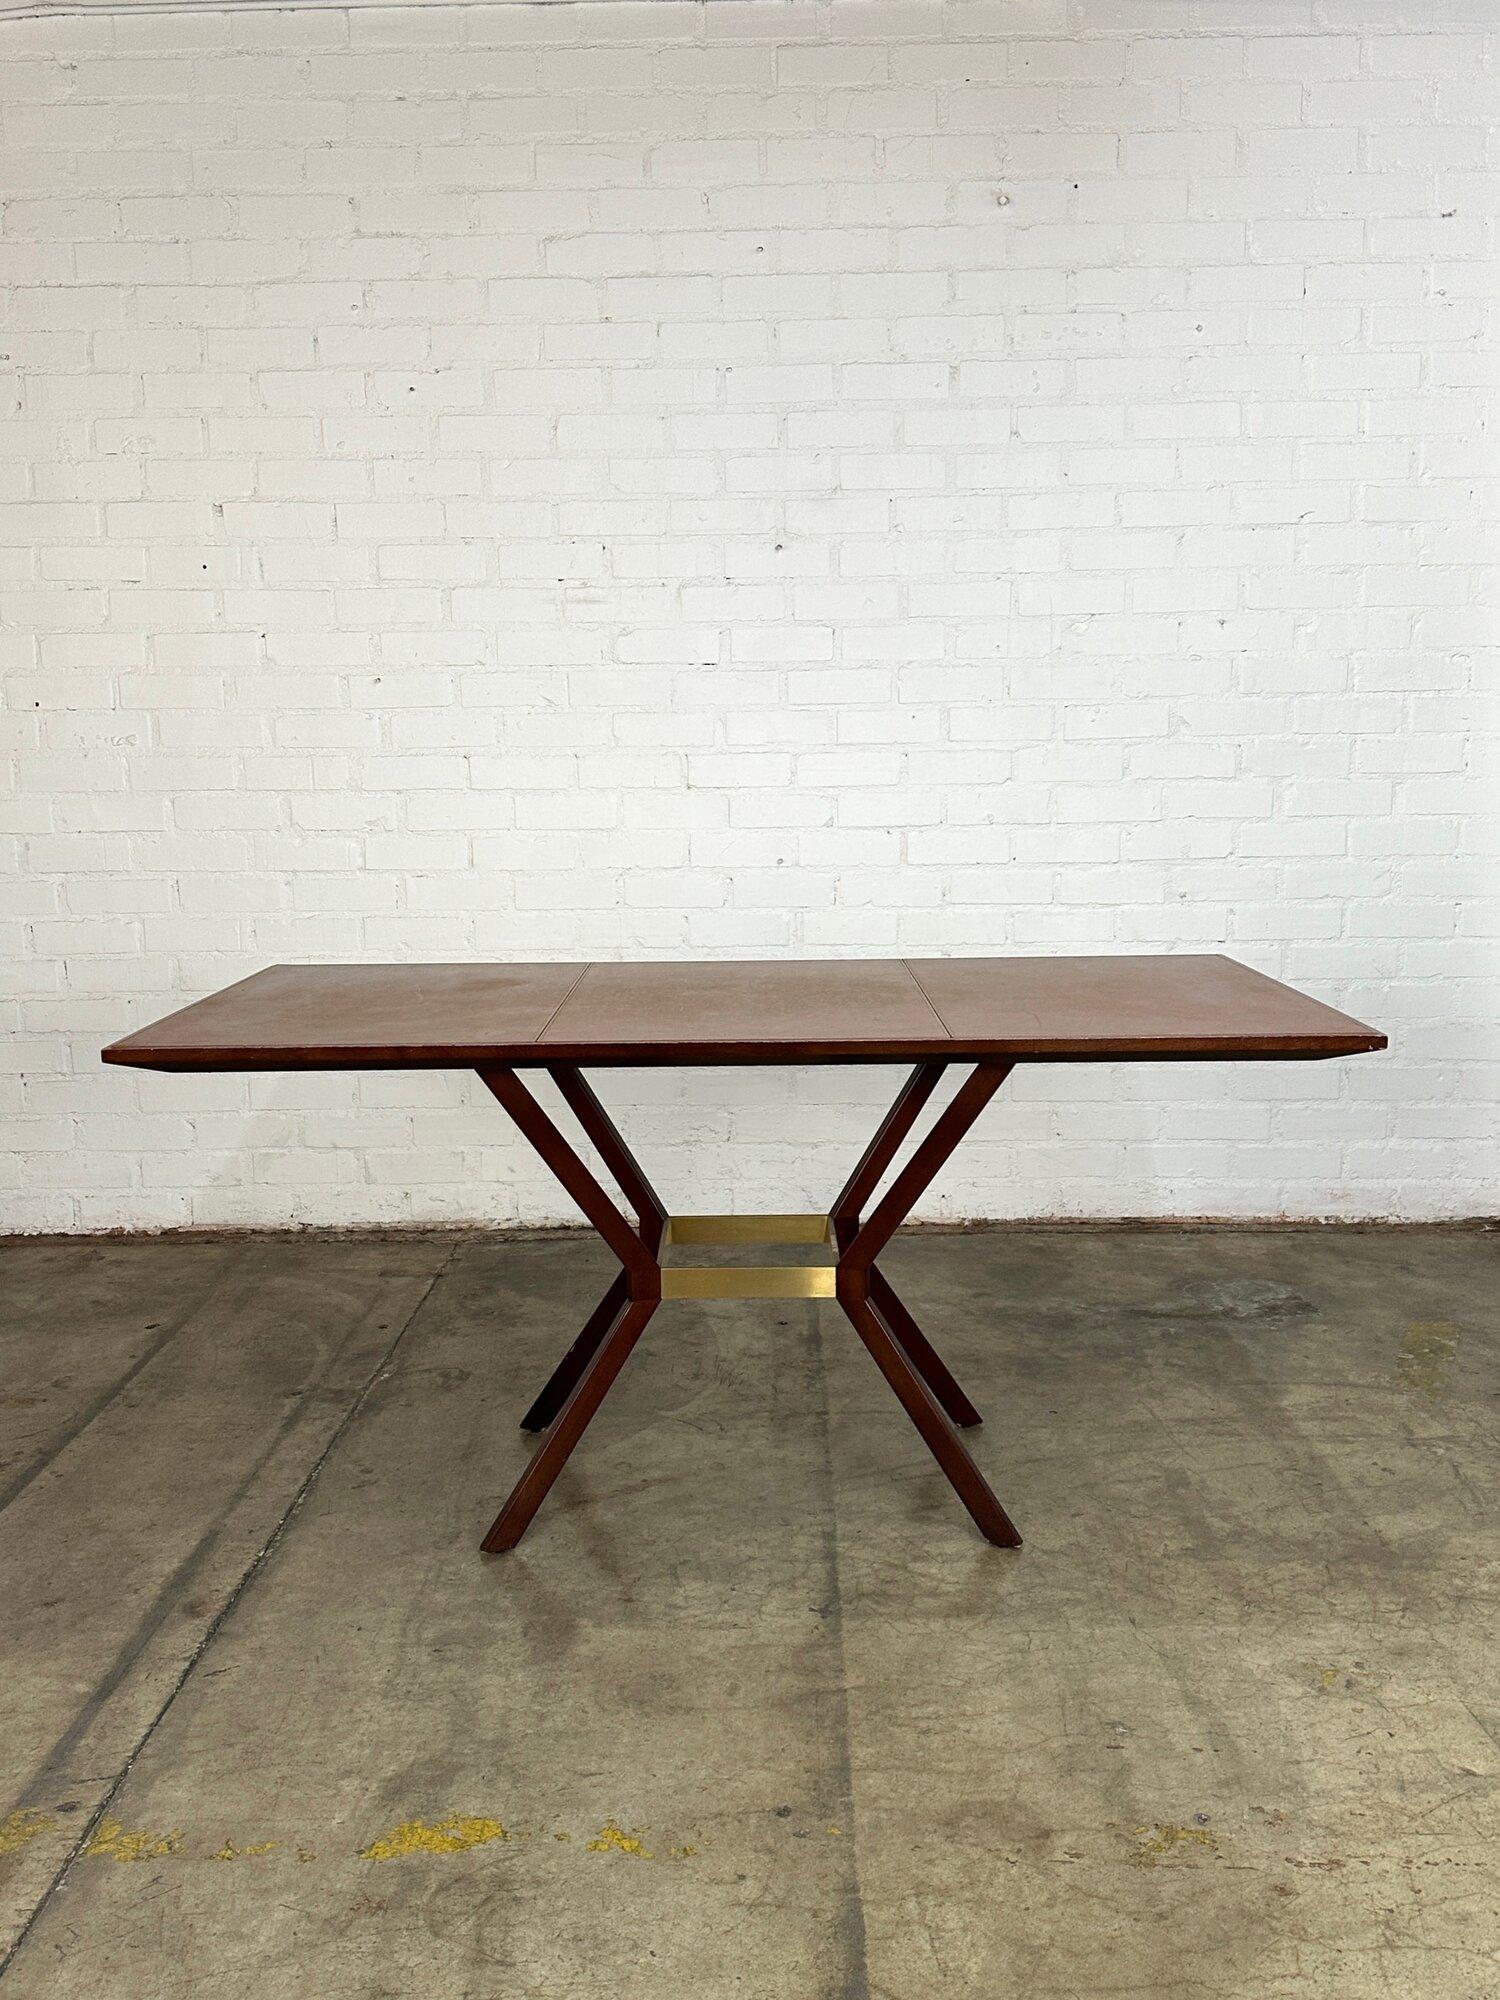 B71 T33,5 H33,5

Vintage Display Tisch in gutem gebrauchten Zustand. Der Tisch weist kleinere Kerben im Holz und im Finish auf, ist aber insgesamt gut erhalten. Der Tisch ist strukturell solide und  robust. Brass Bar unterstützt sind gut gesichert